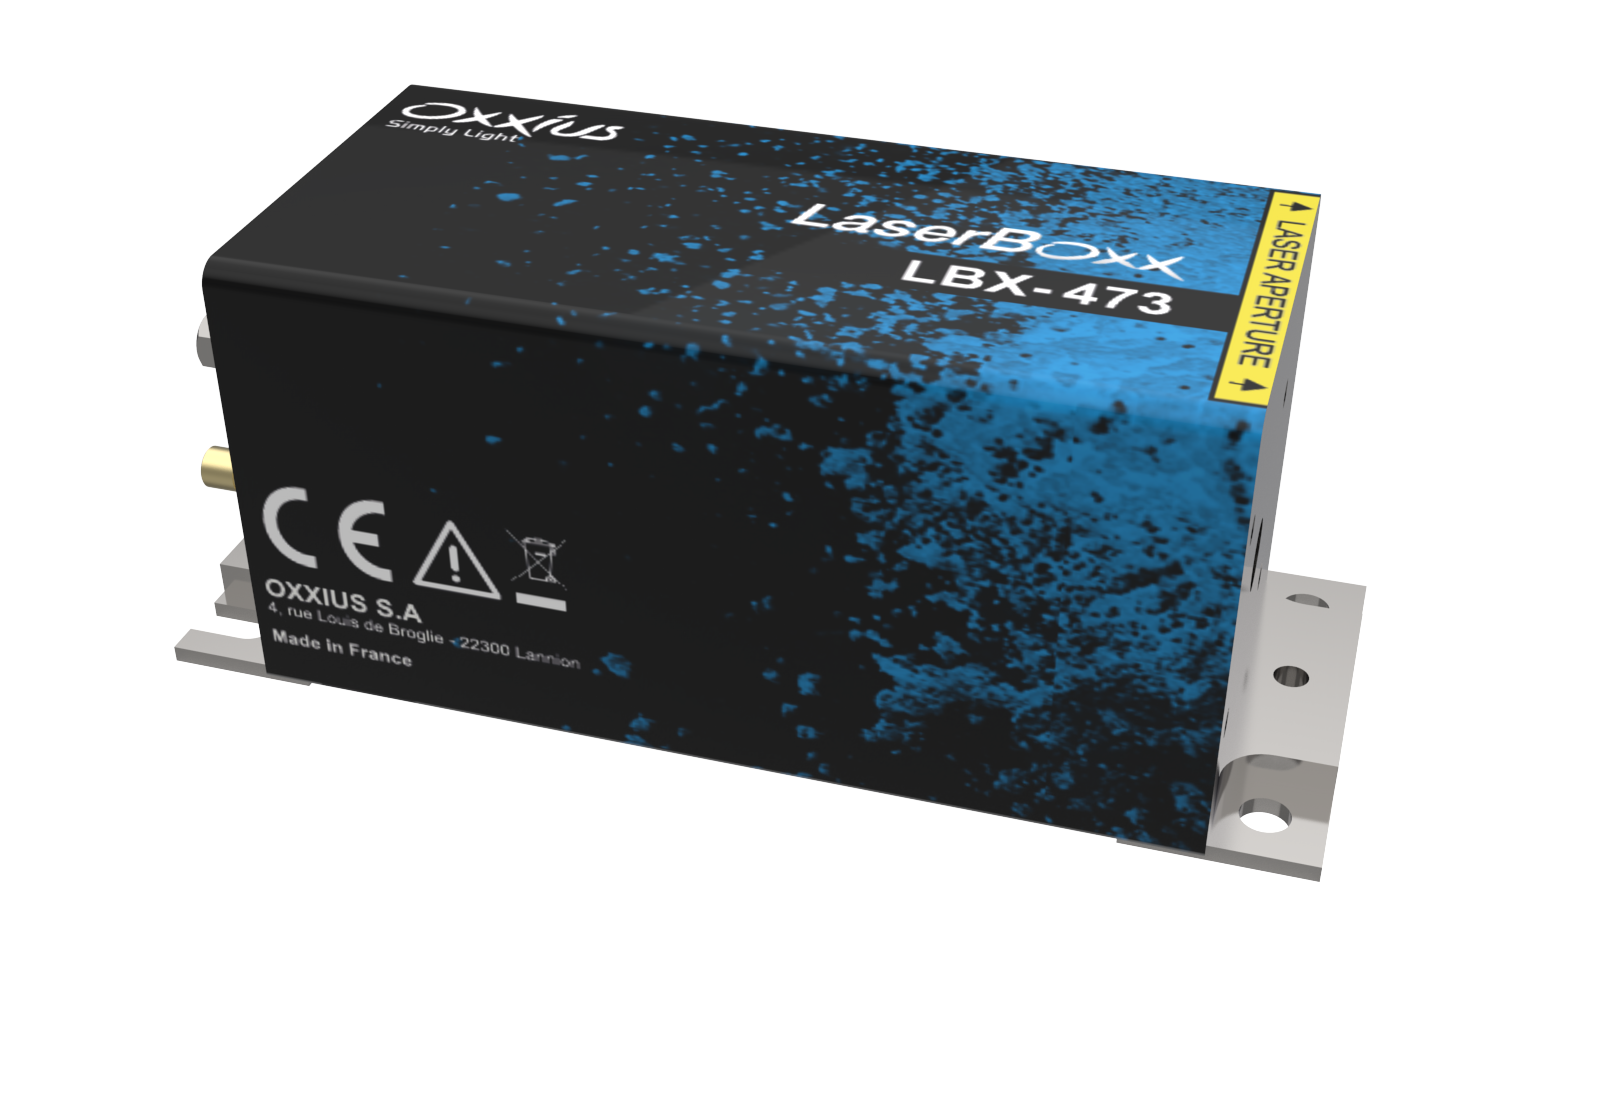 LBX-473-1000-HPE: 473nm HP Laser Diode Module